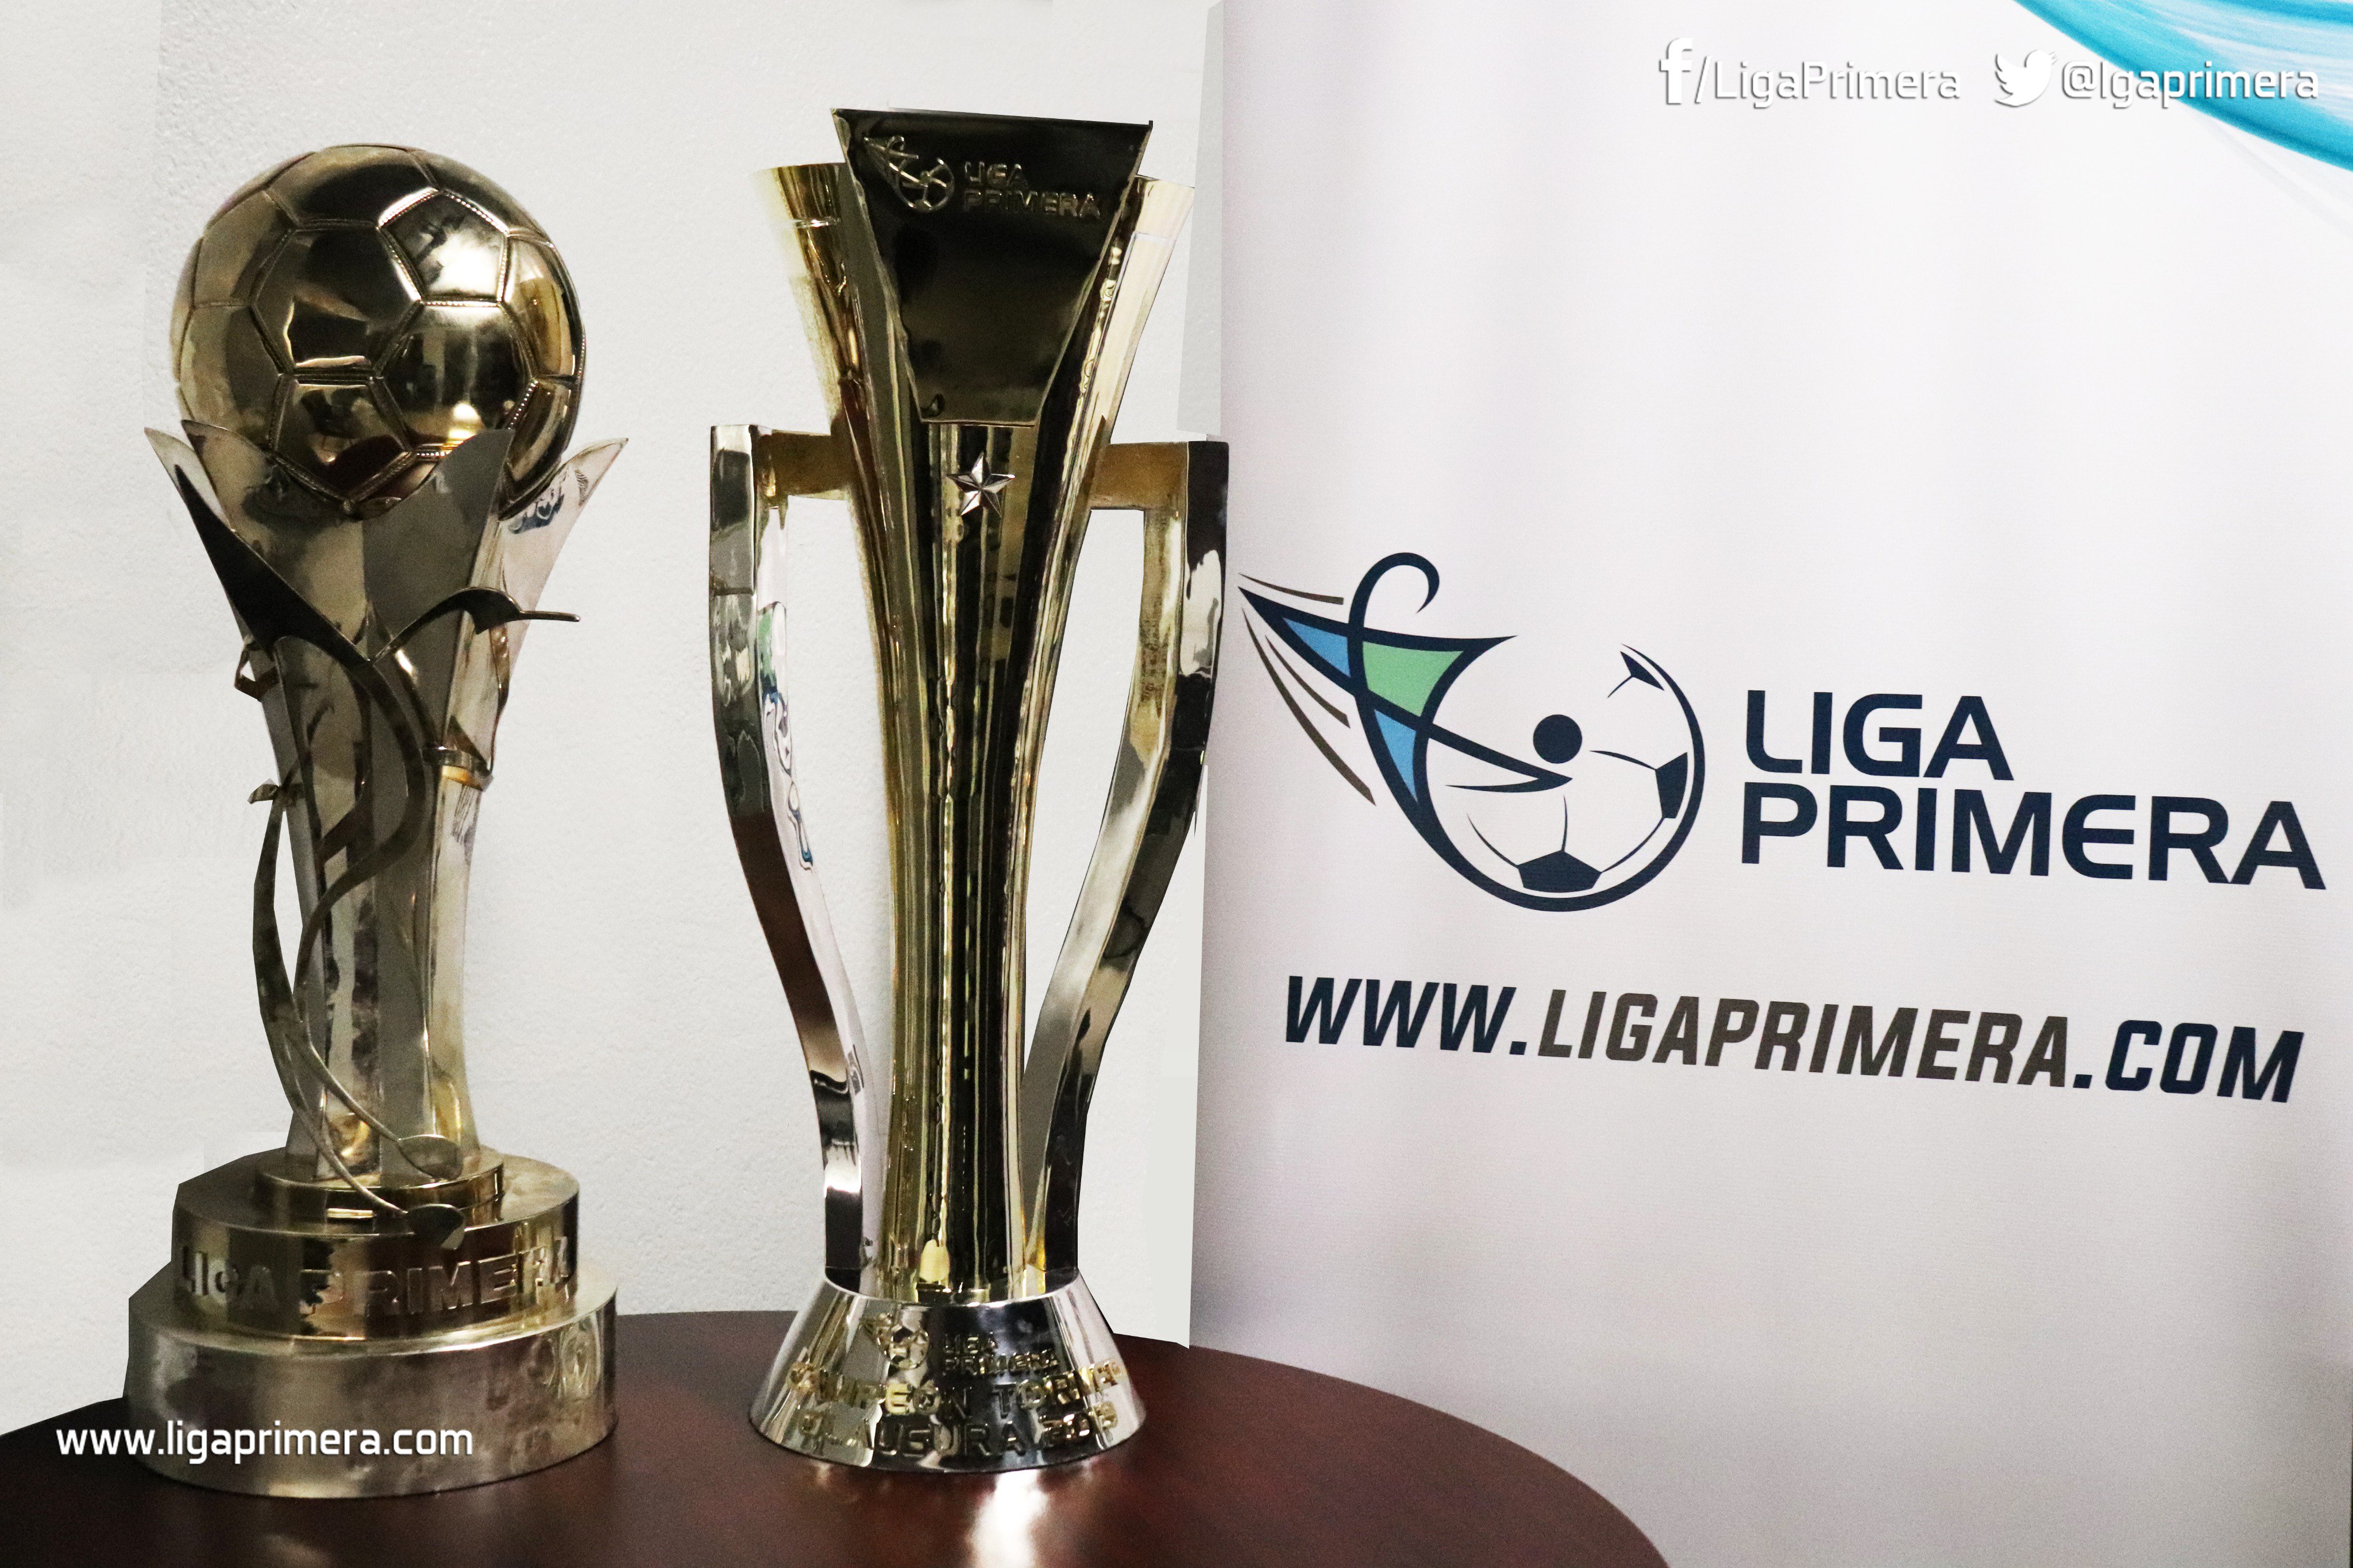 Liga Primera no Twitter: "¡LOS TROFEOS OFICIALES DE LIGA PRIMERA! El primer trofeo (izquierda) será entregado a equipos campeones de cada Torneo Apertura; el segundo trofeo será para los equipos